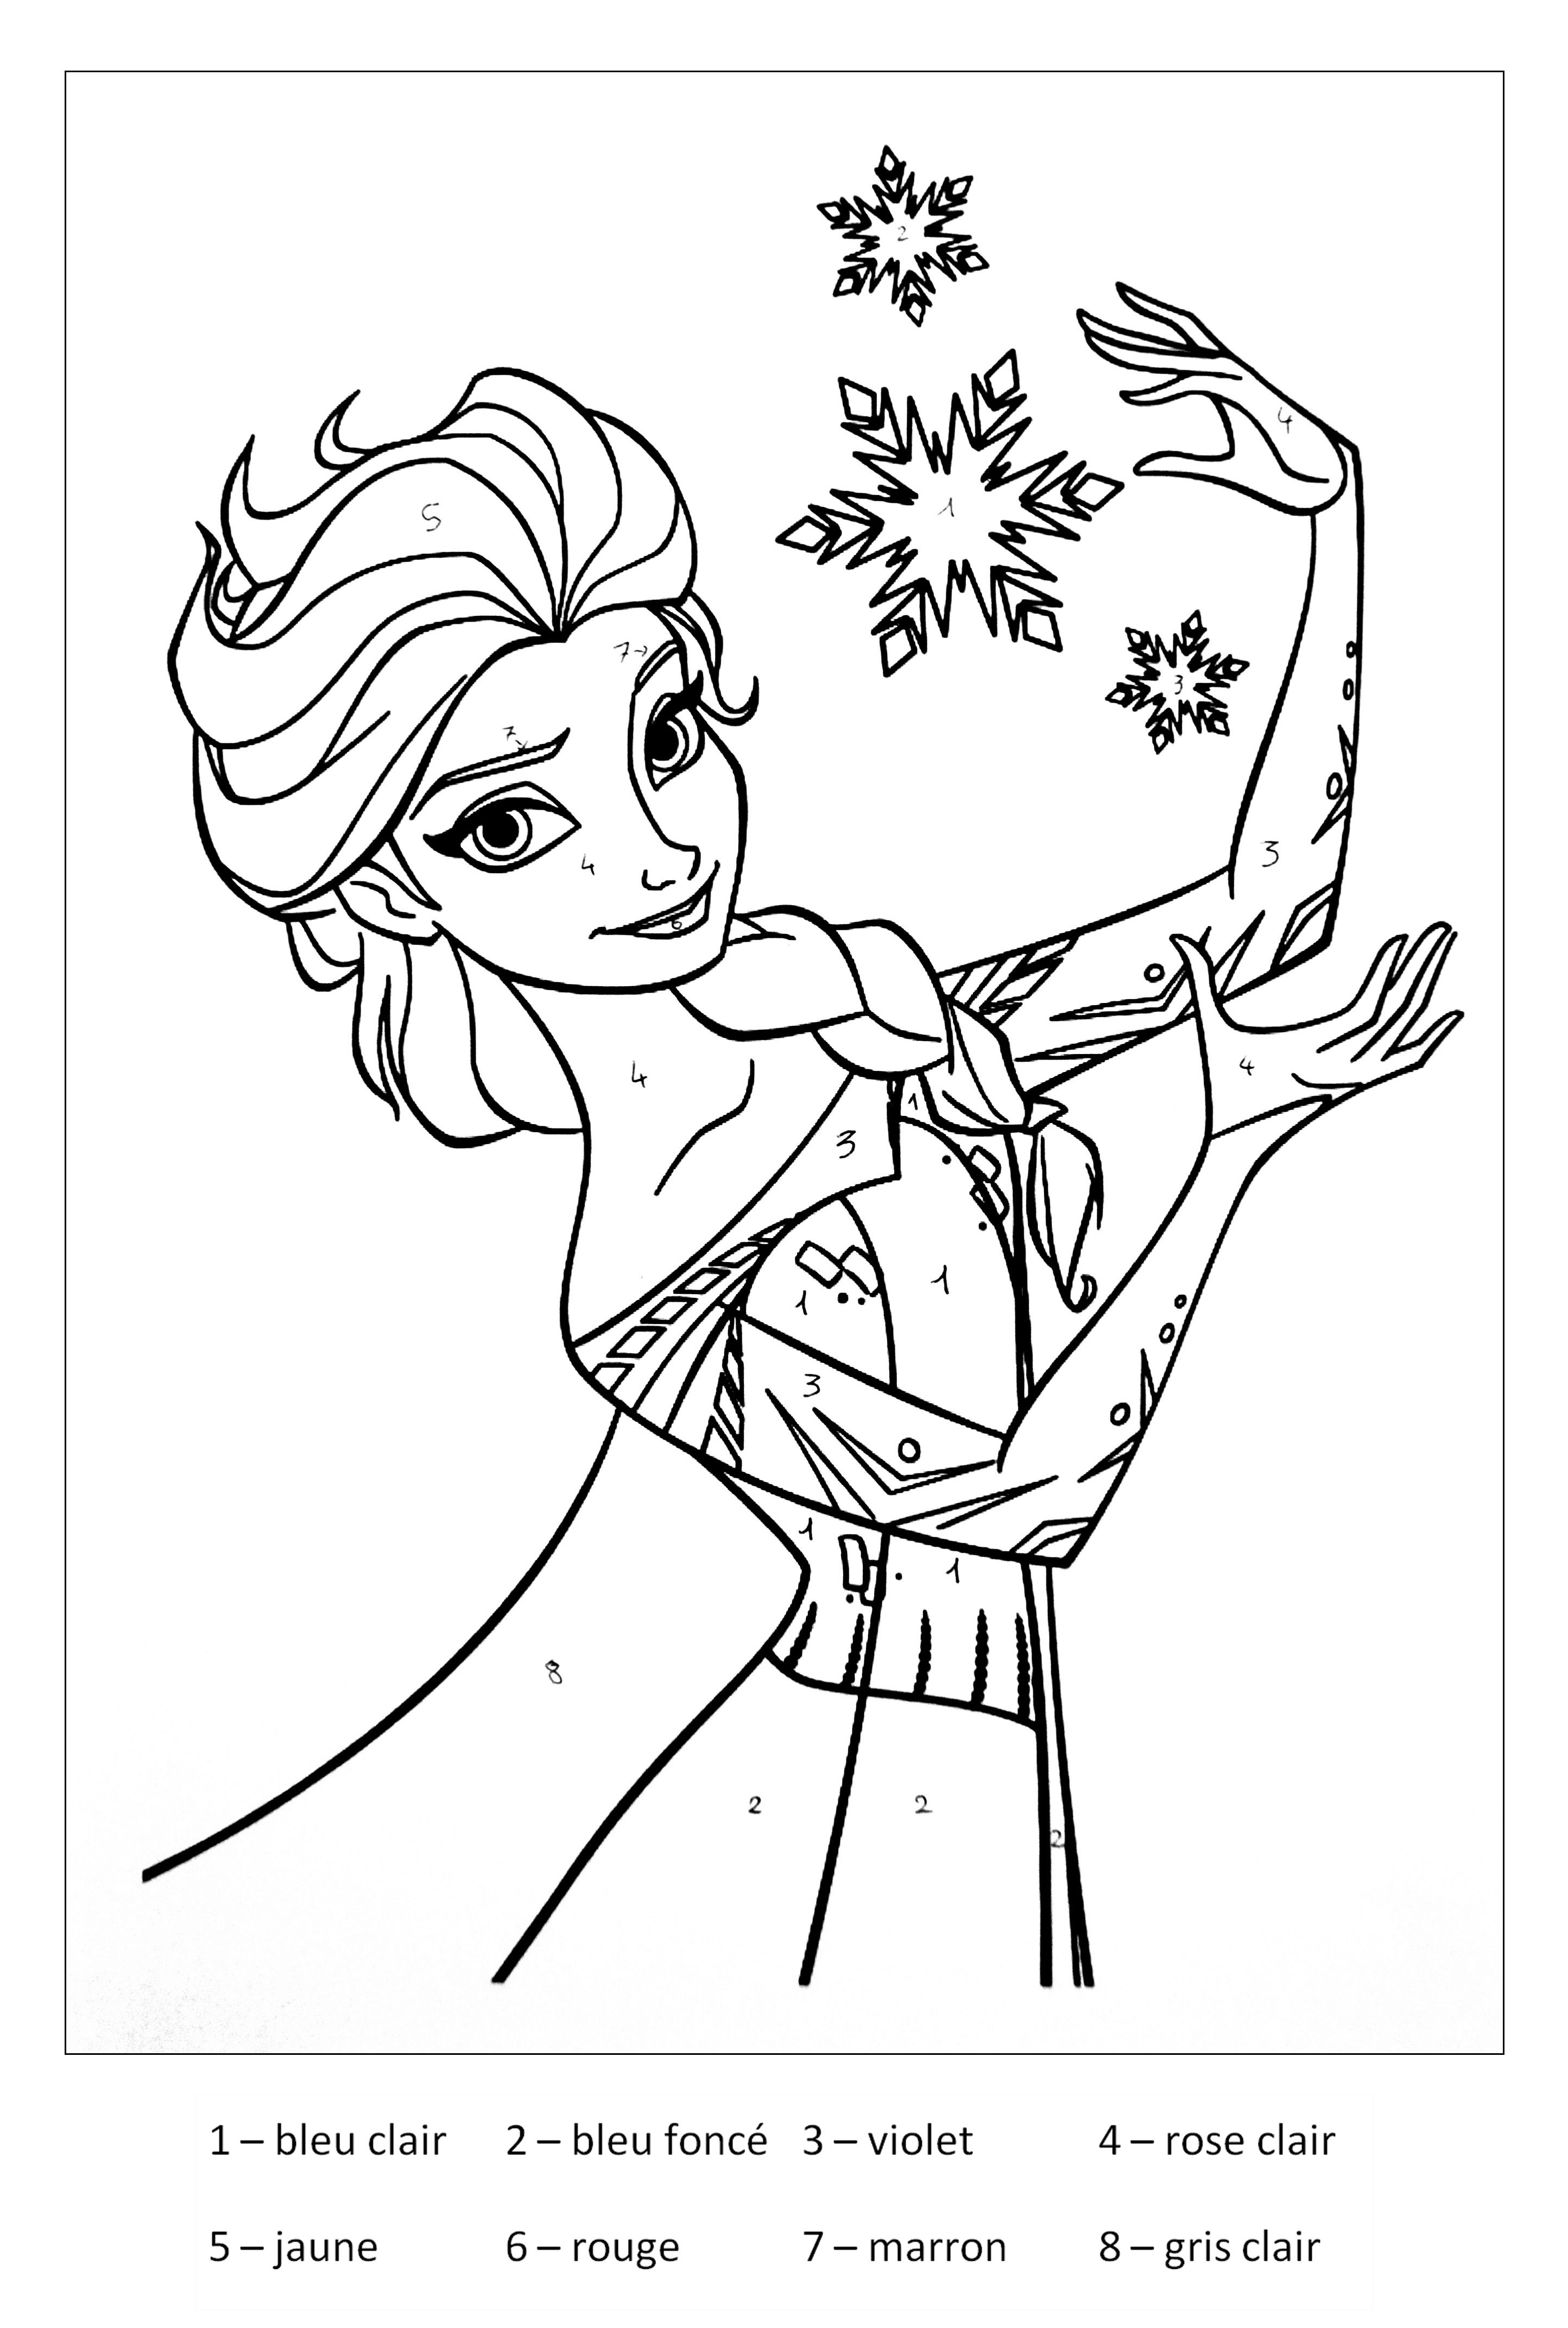 Desenhos simples para crianças para colorir de frozen:-o-reino-do-gelo -  Frozen: O Reino do Gelo - Just Color Crianças : Páginas para colorir para  crianças